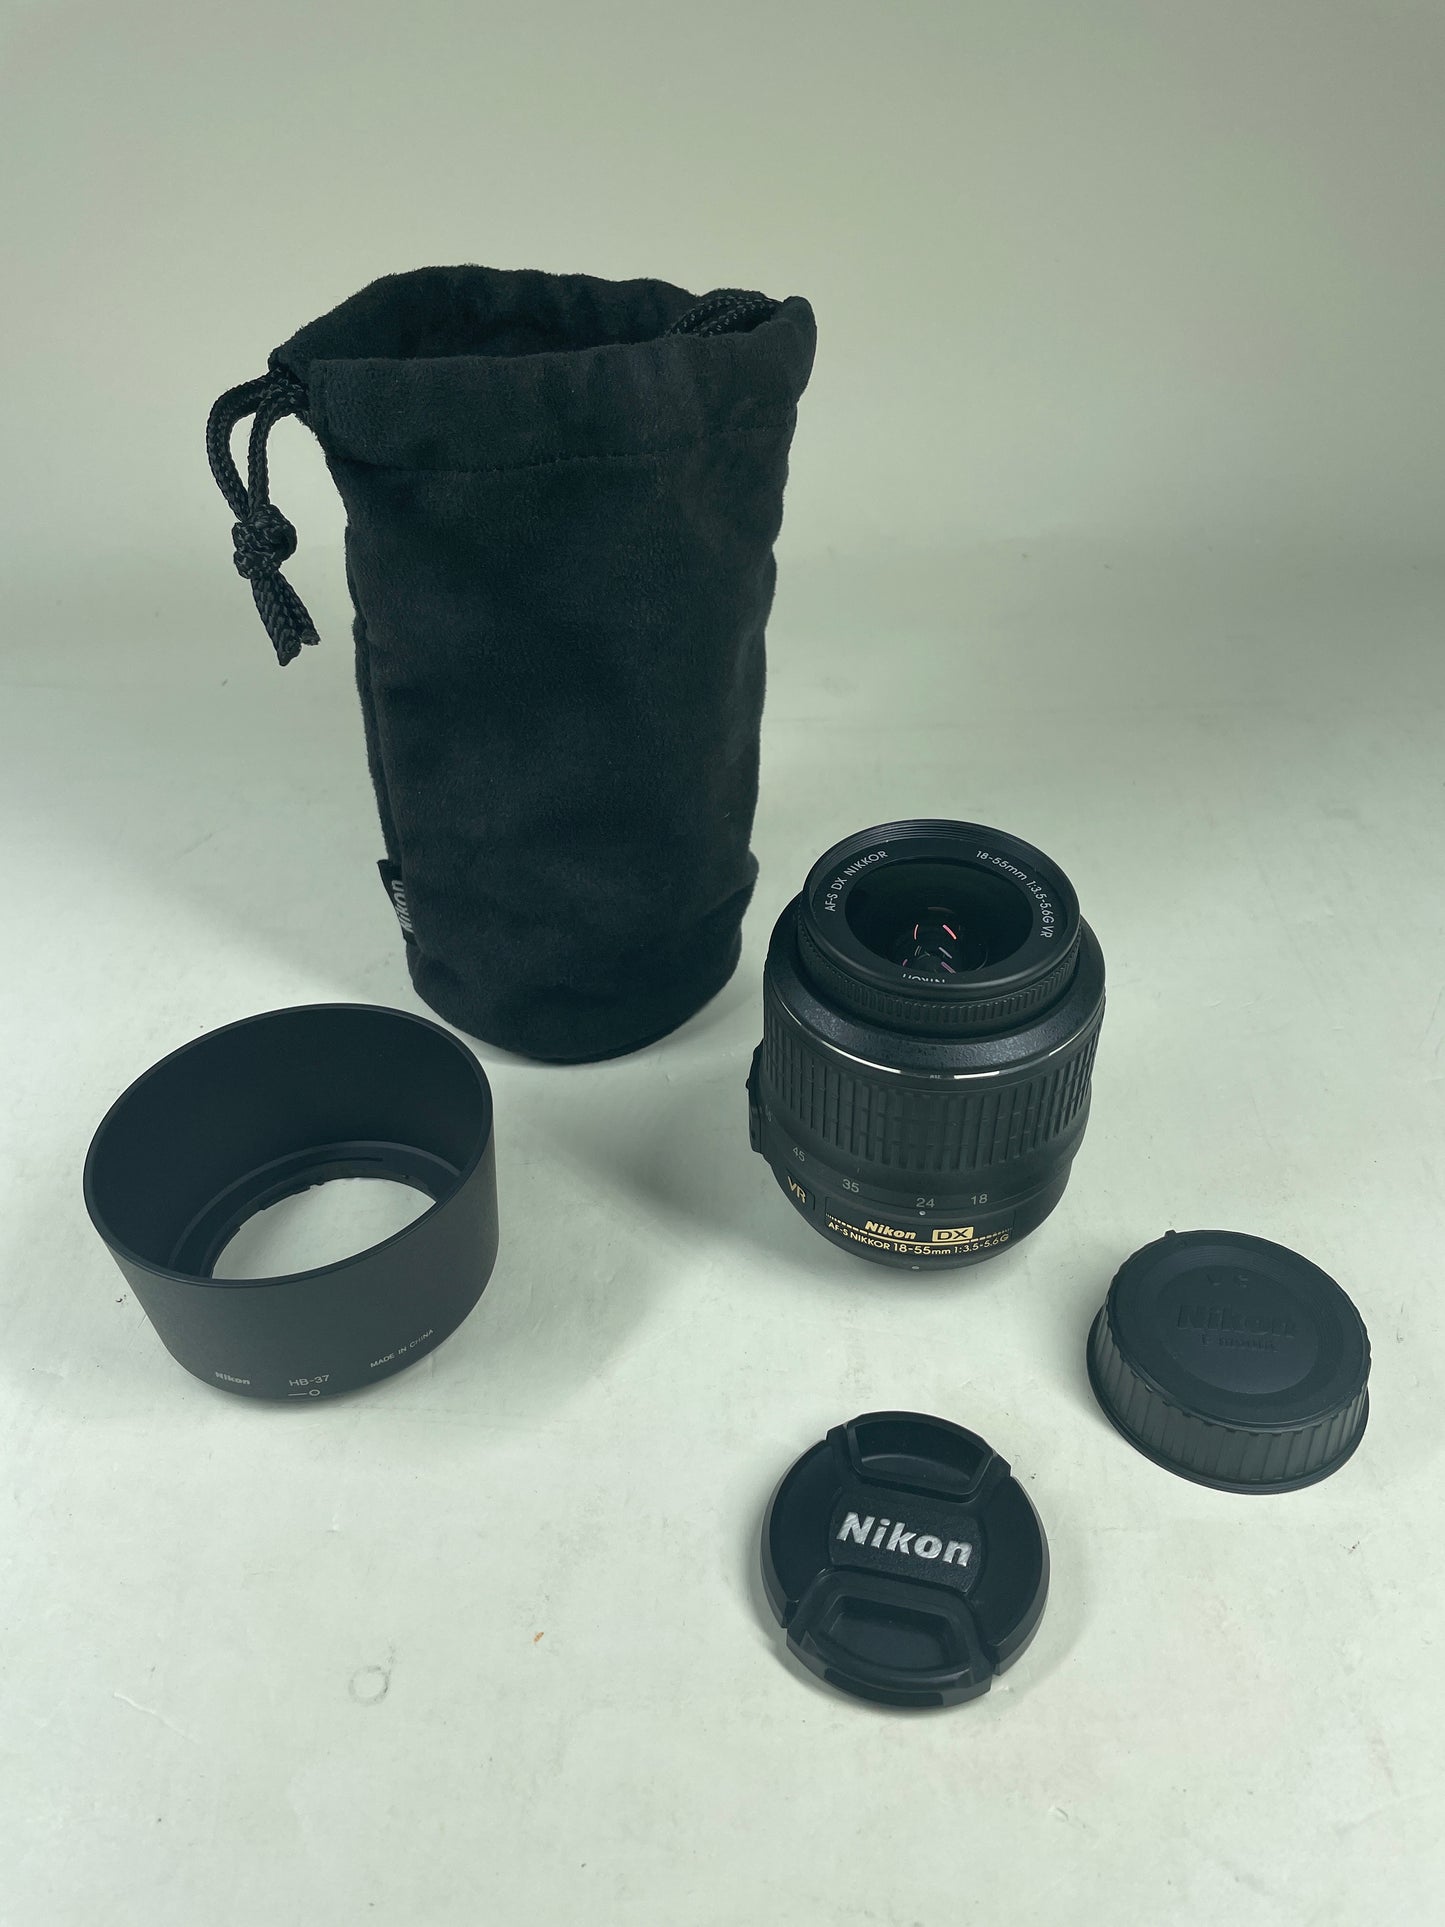 Nikon AF-S DX NIKKOR 18-55mm f/3.5-5.6 G VR